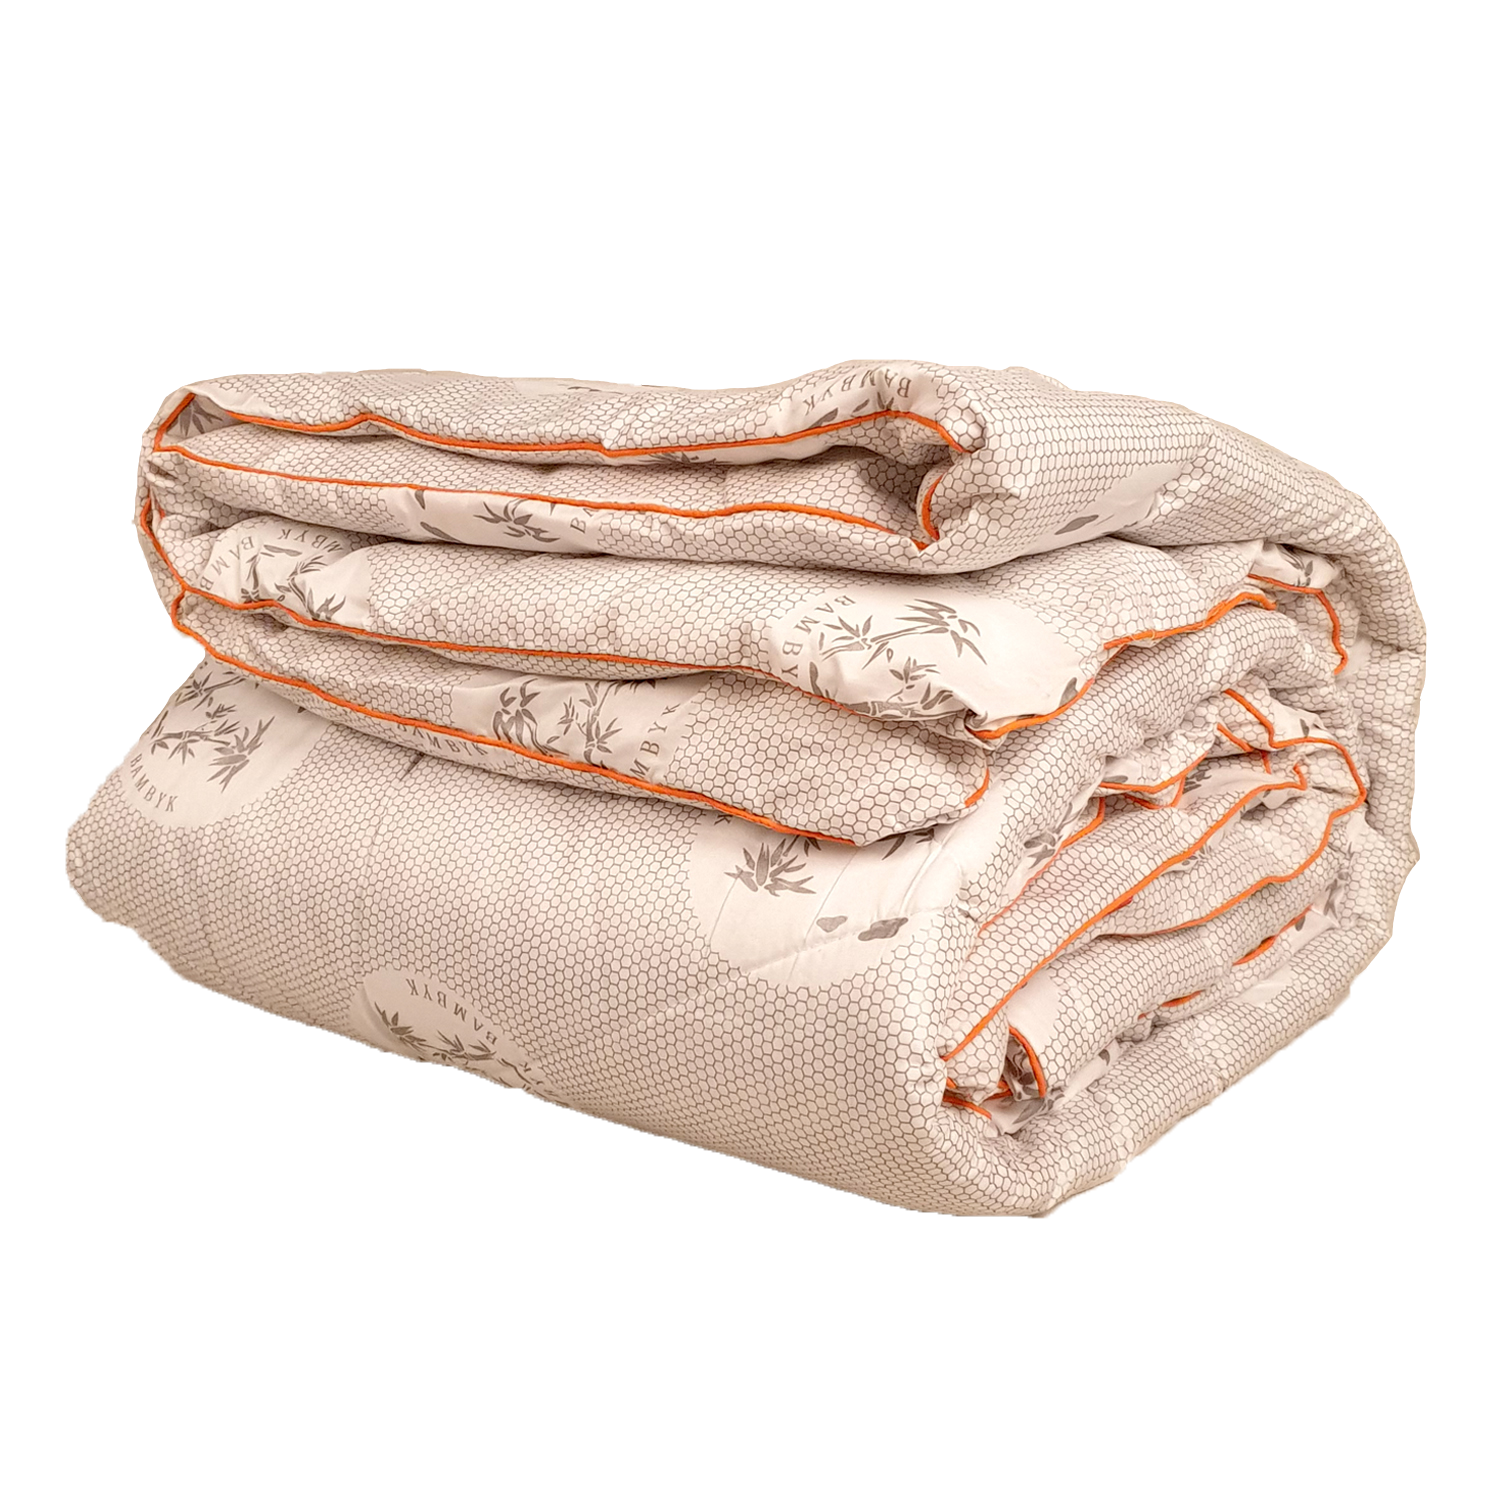 Одеяло всесезонное Бамбук (50/50) чехол тик п/э 